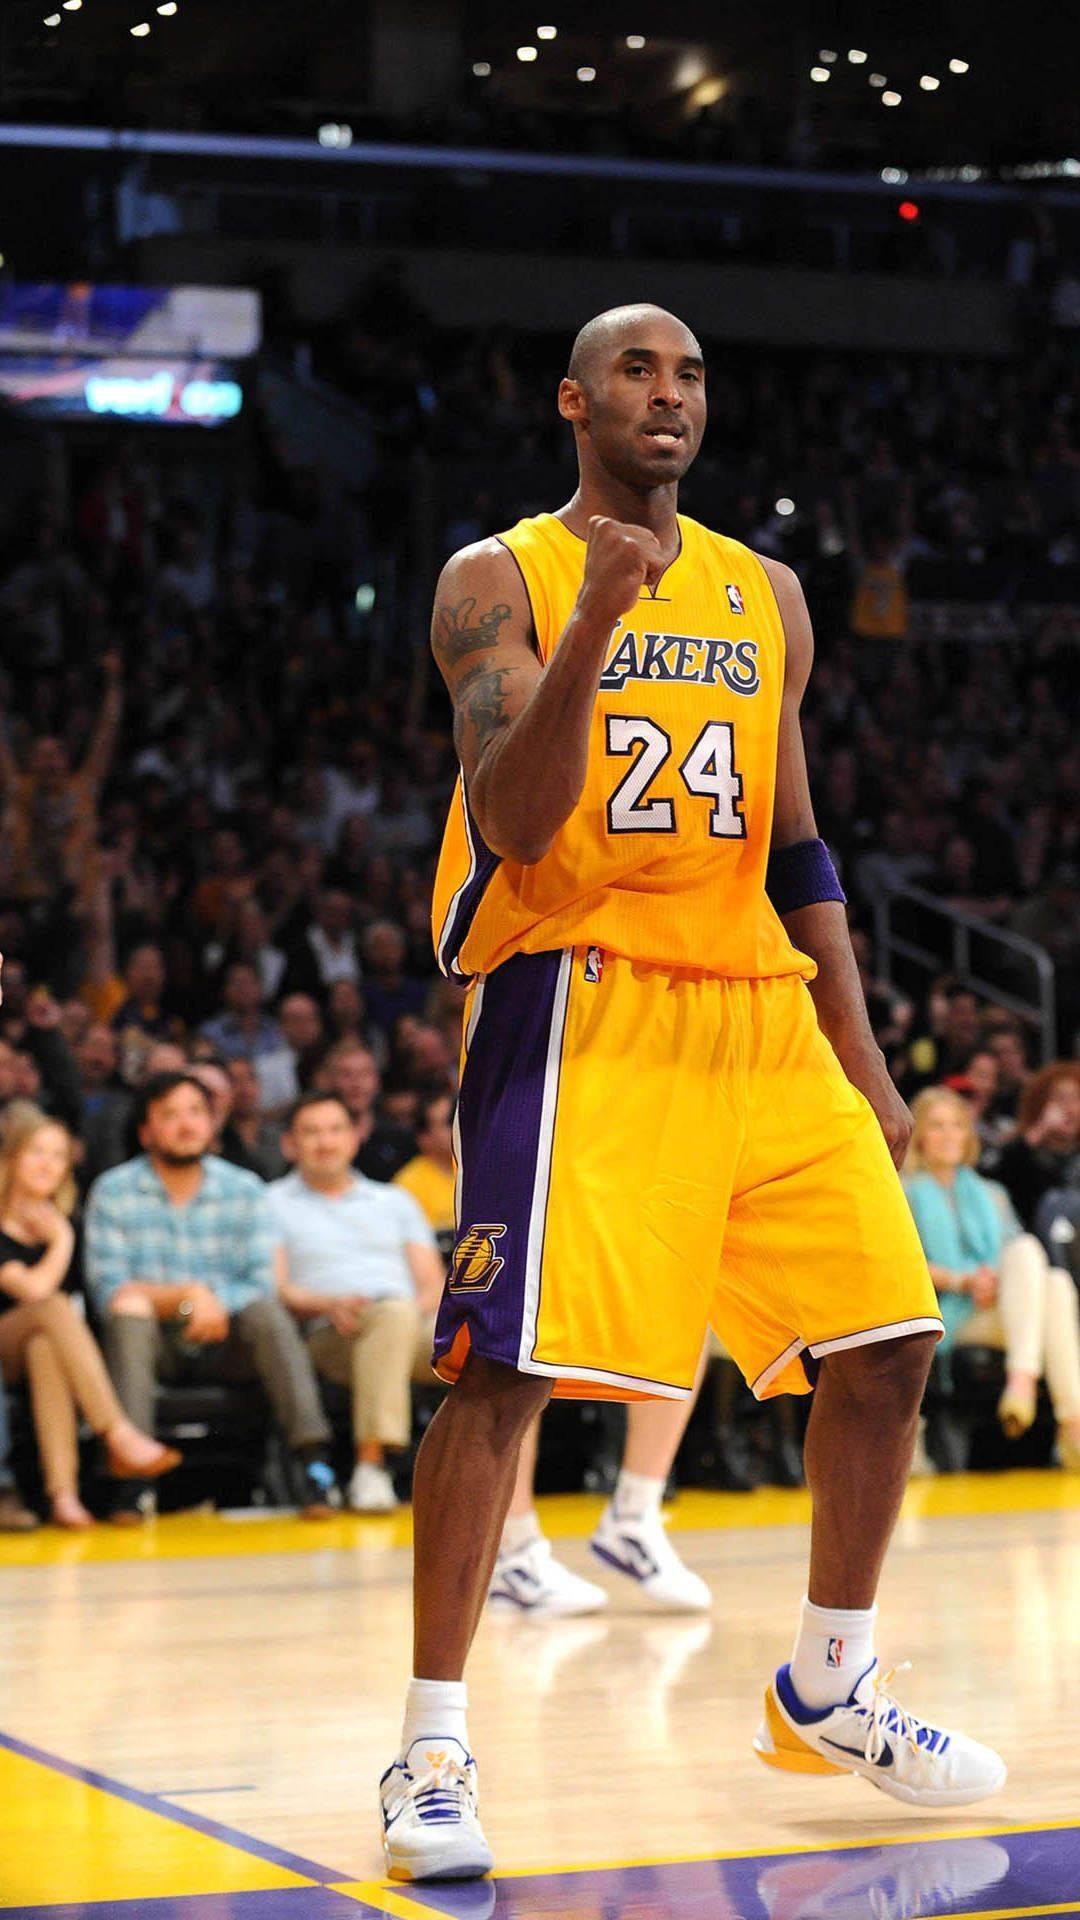 Lakerskobe Bryant Iphone - Lakers Kobe Bryant Iphone Wallpaper